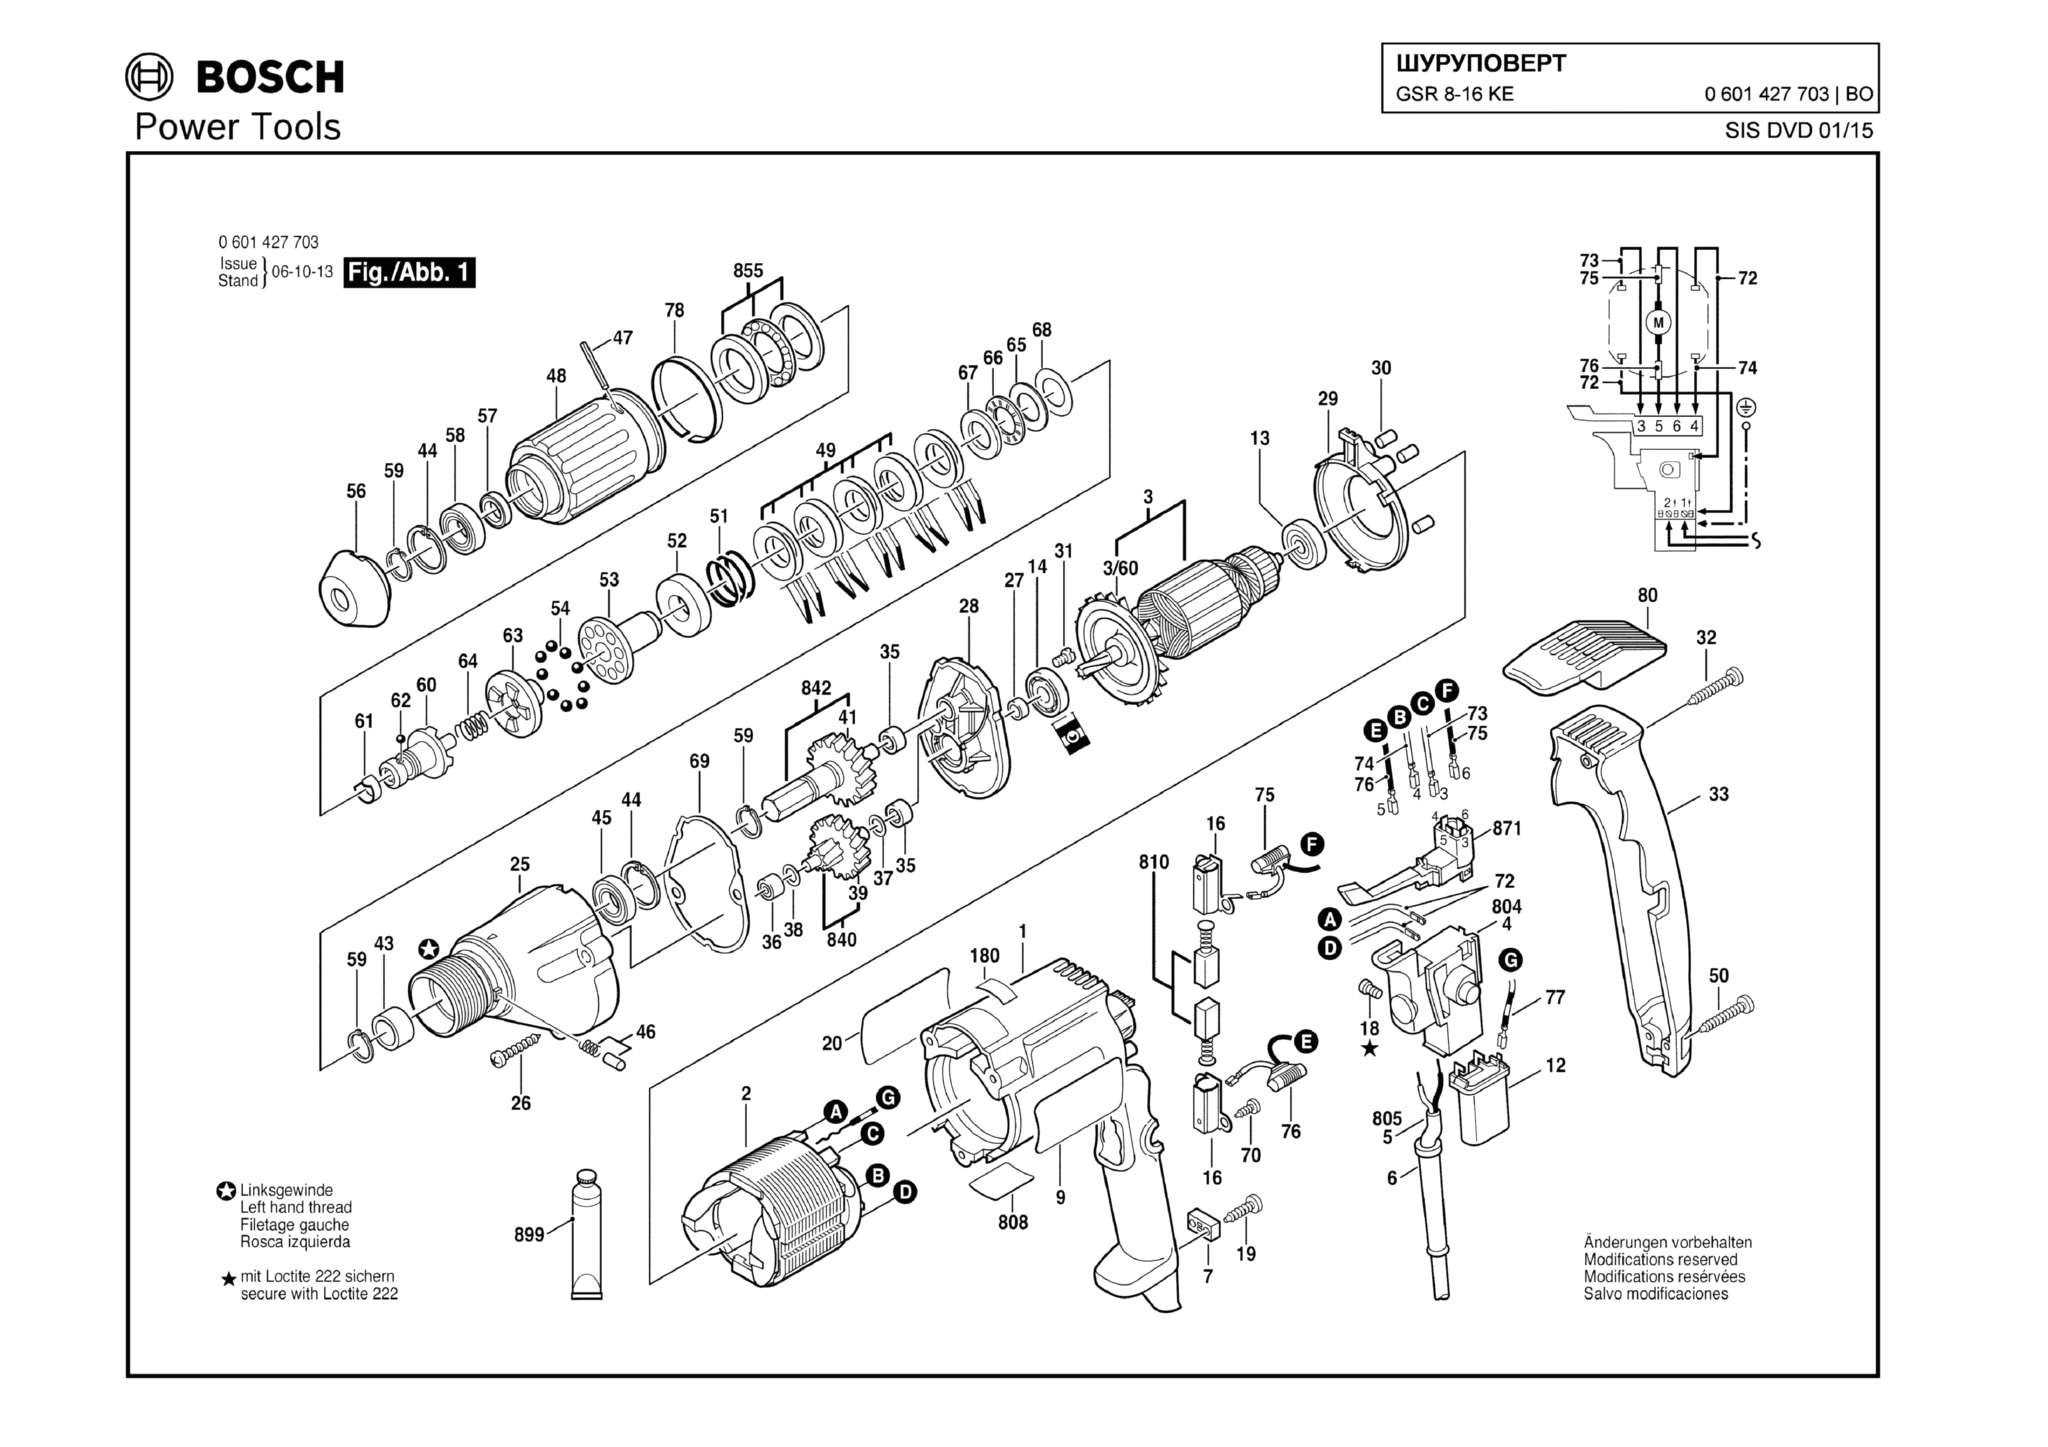 Запчасти, схема и деталировка Bosch GSR 8-16 KE (ТИП 0601427703)